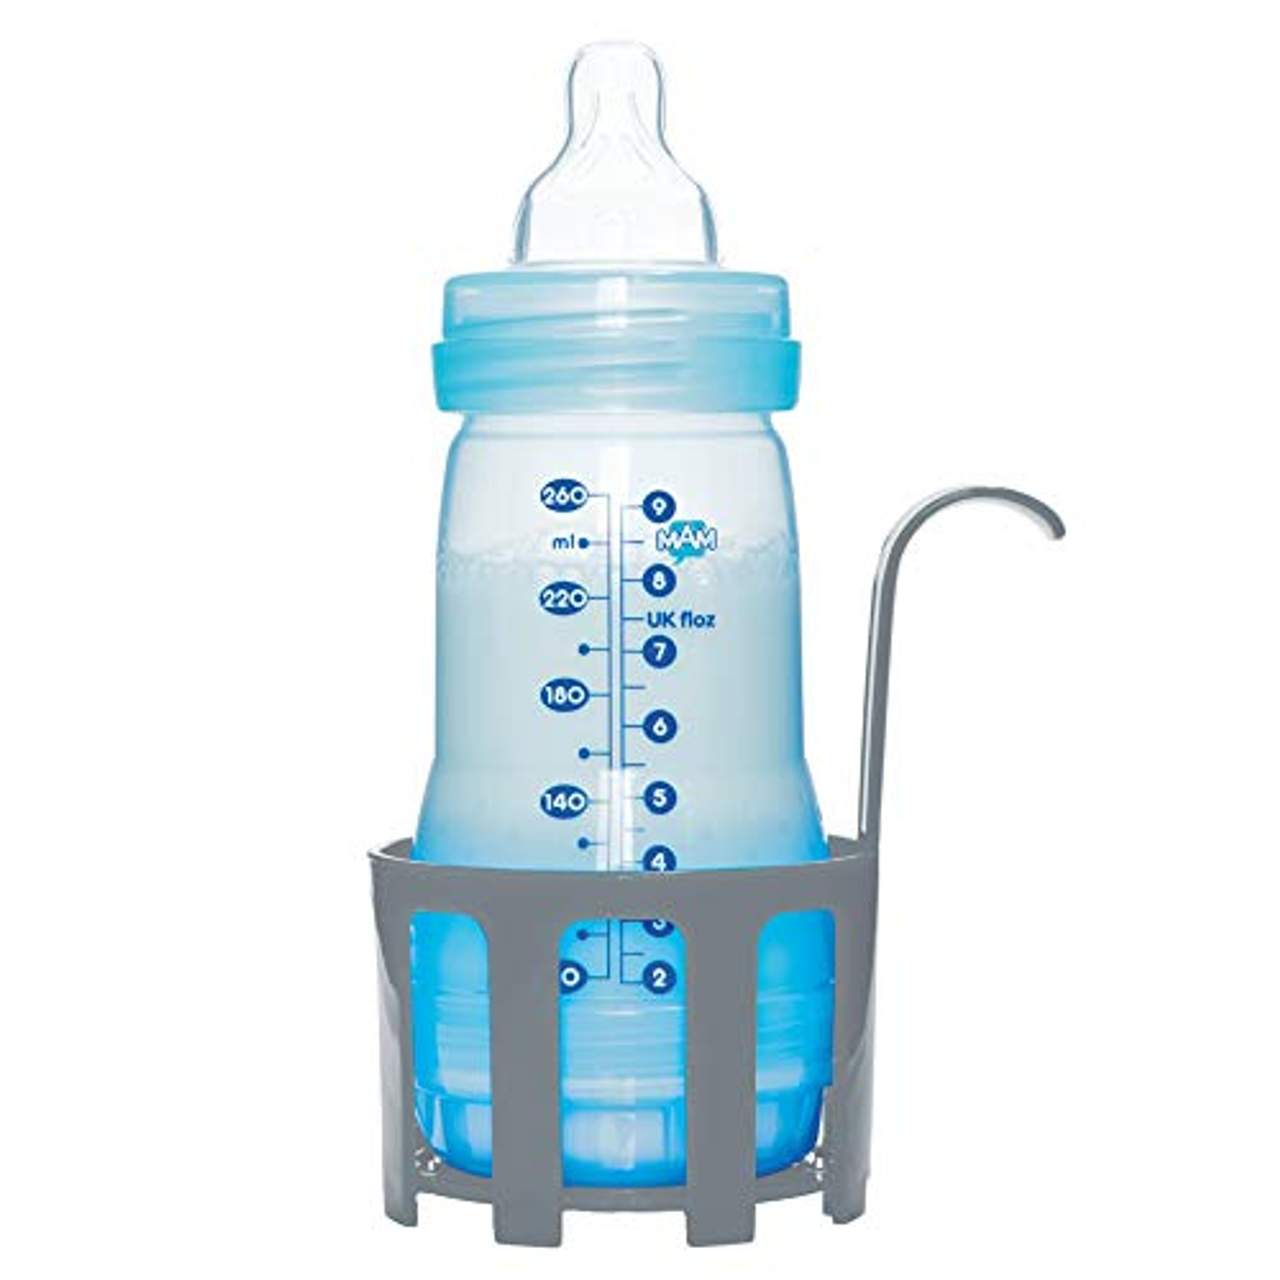 MAM Babykosterwärmer Babykostwärmer für Babyflaschen und Babynahrung